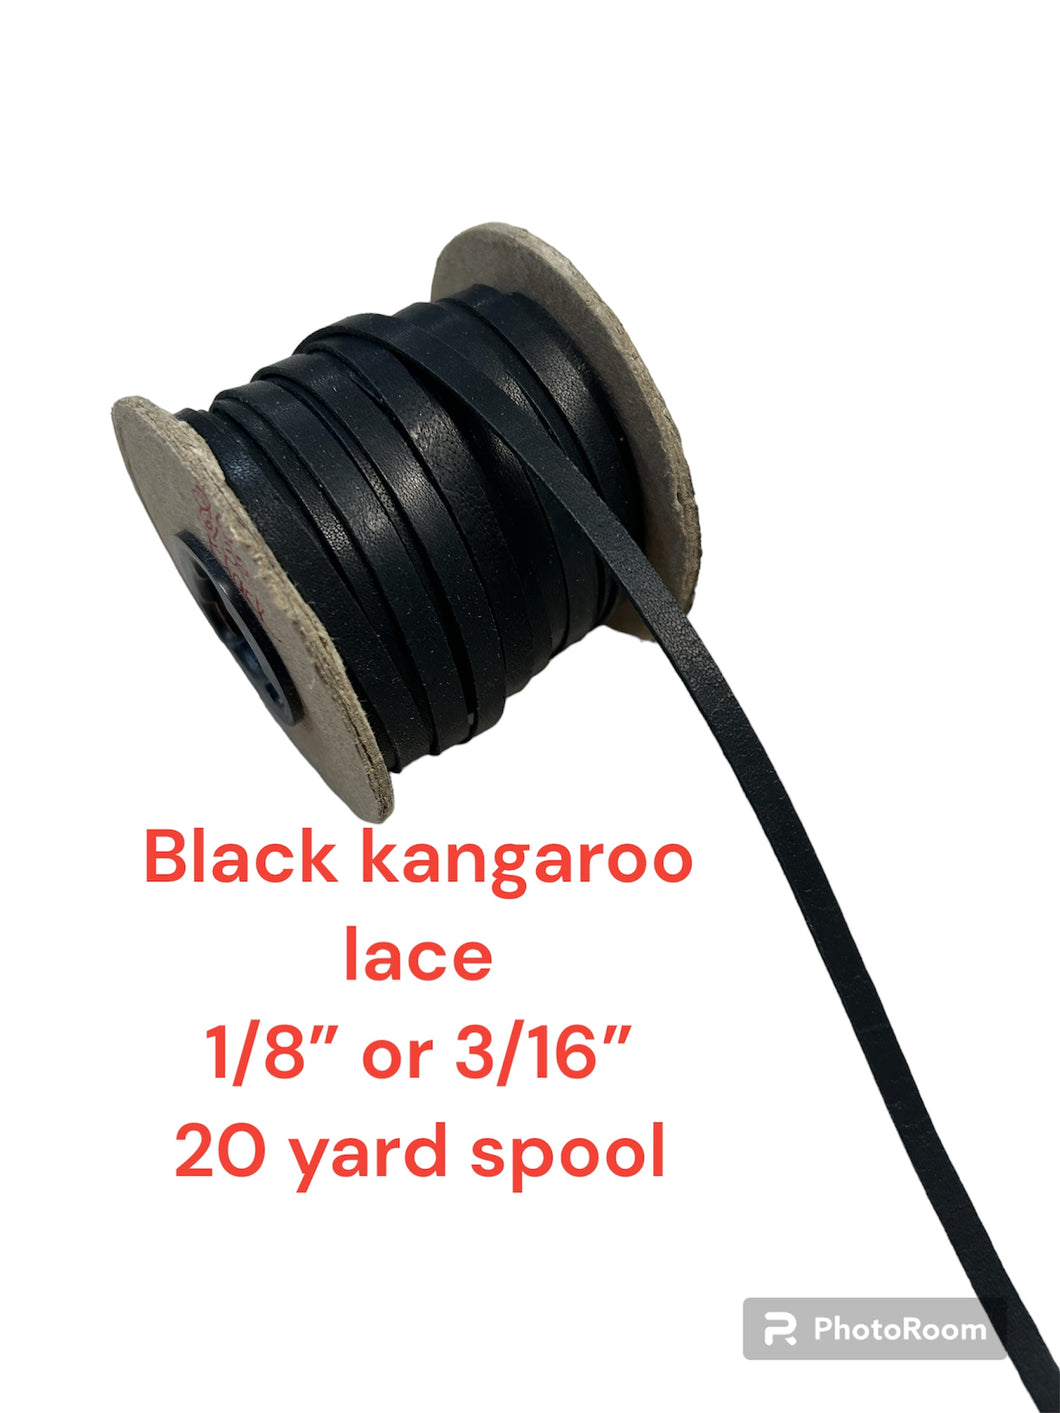 Kangaroo lace 1/8”